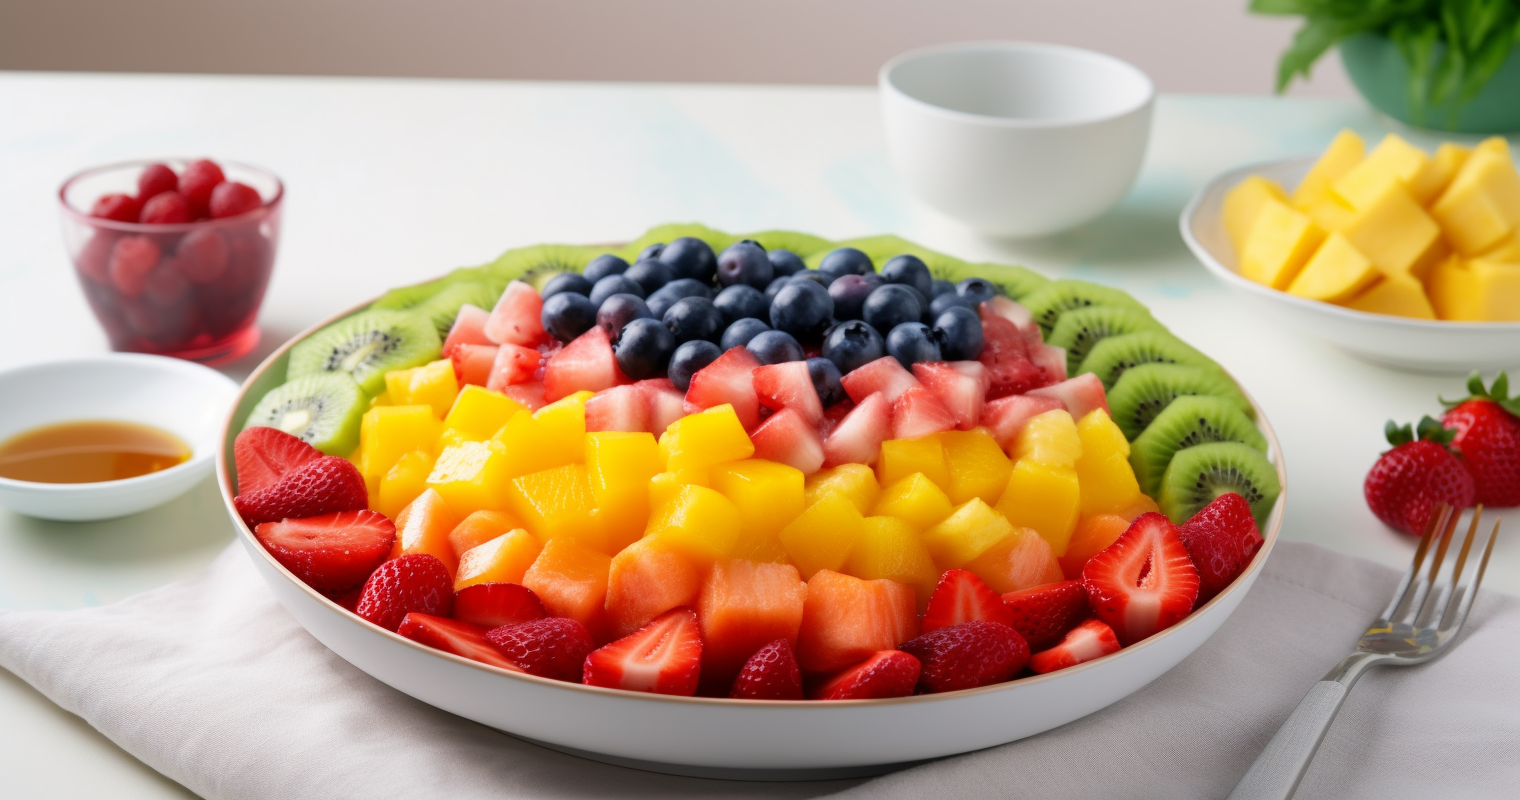 Rainbow Fruit Salad Image